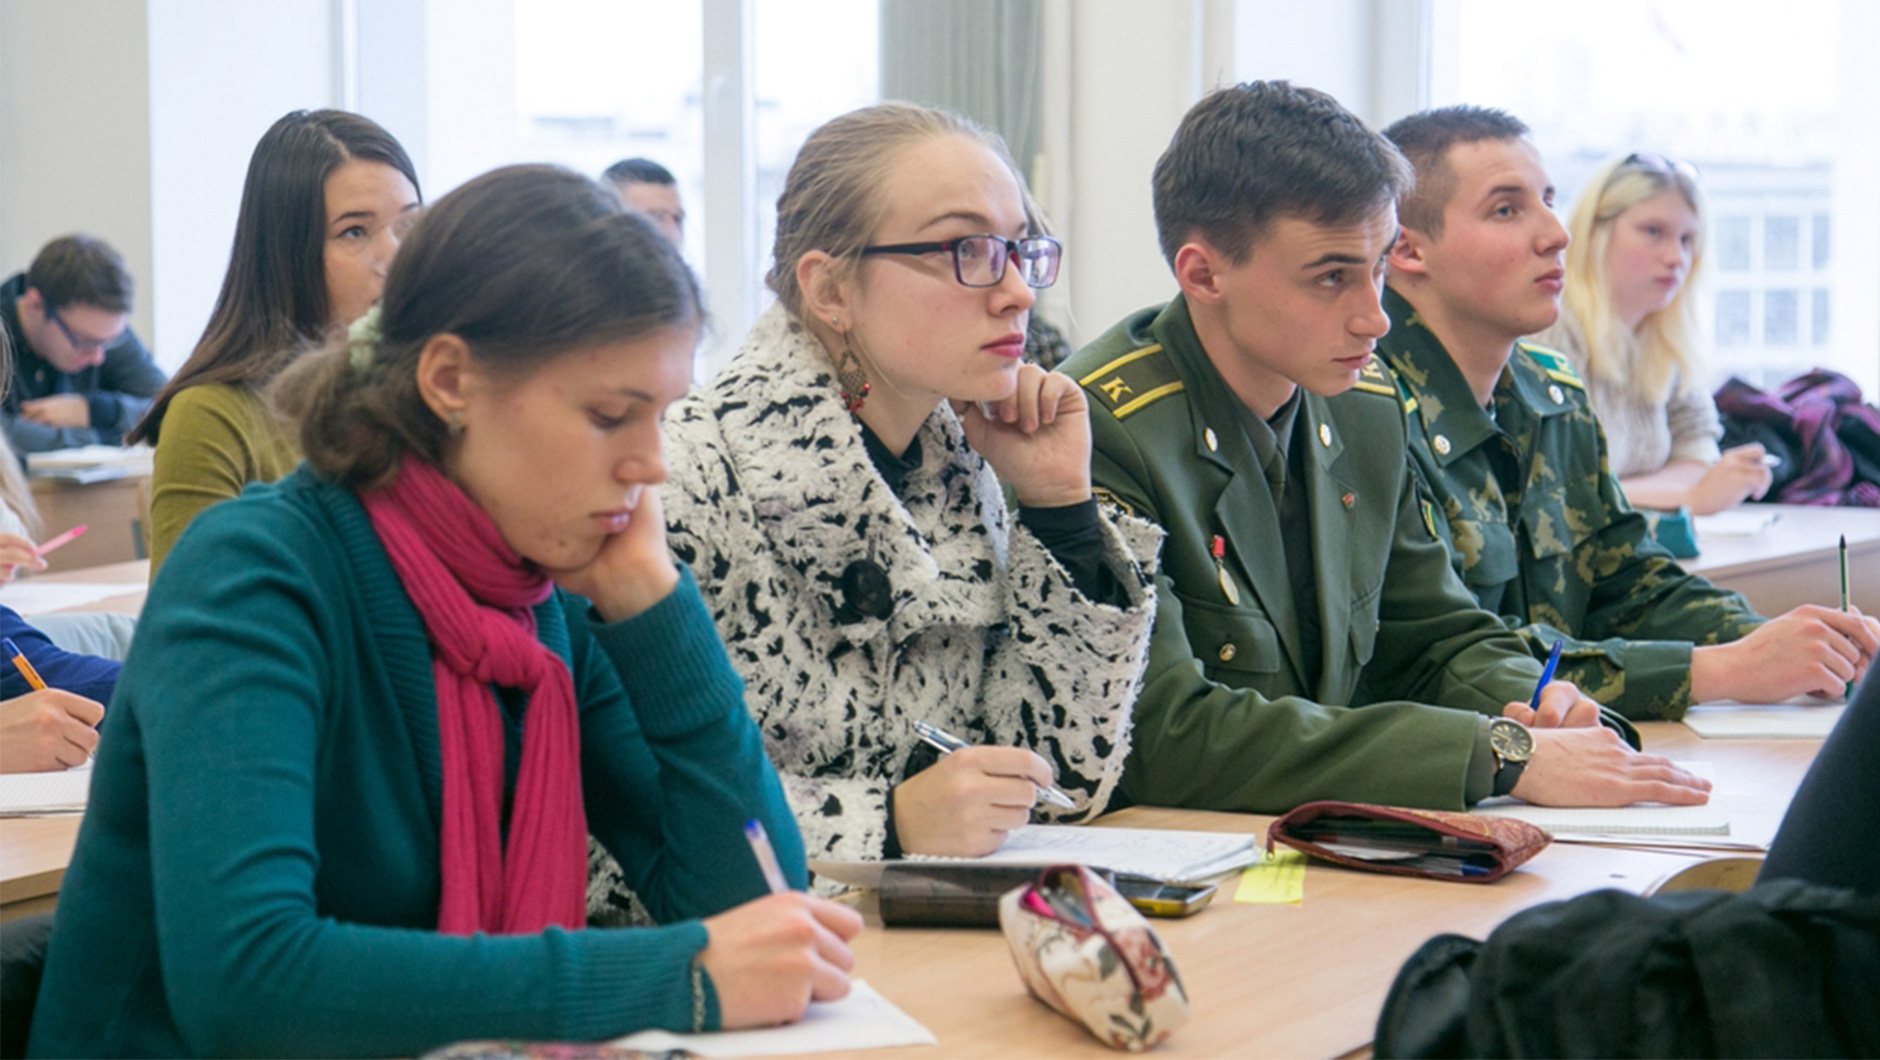 Из белорусских вузов военные факультеты имеются в БГУ, БГУИР, БНТУ, БГМУ, ГрГУ, БелГУТ и БГАА